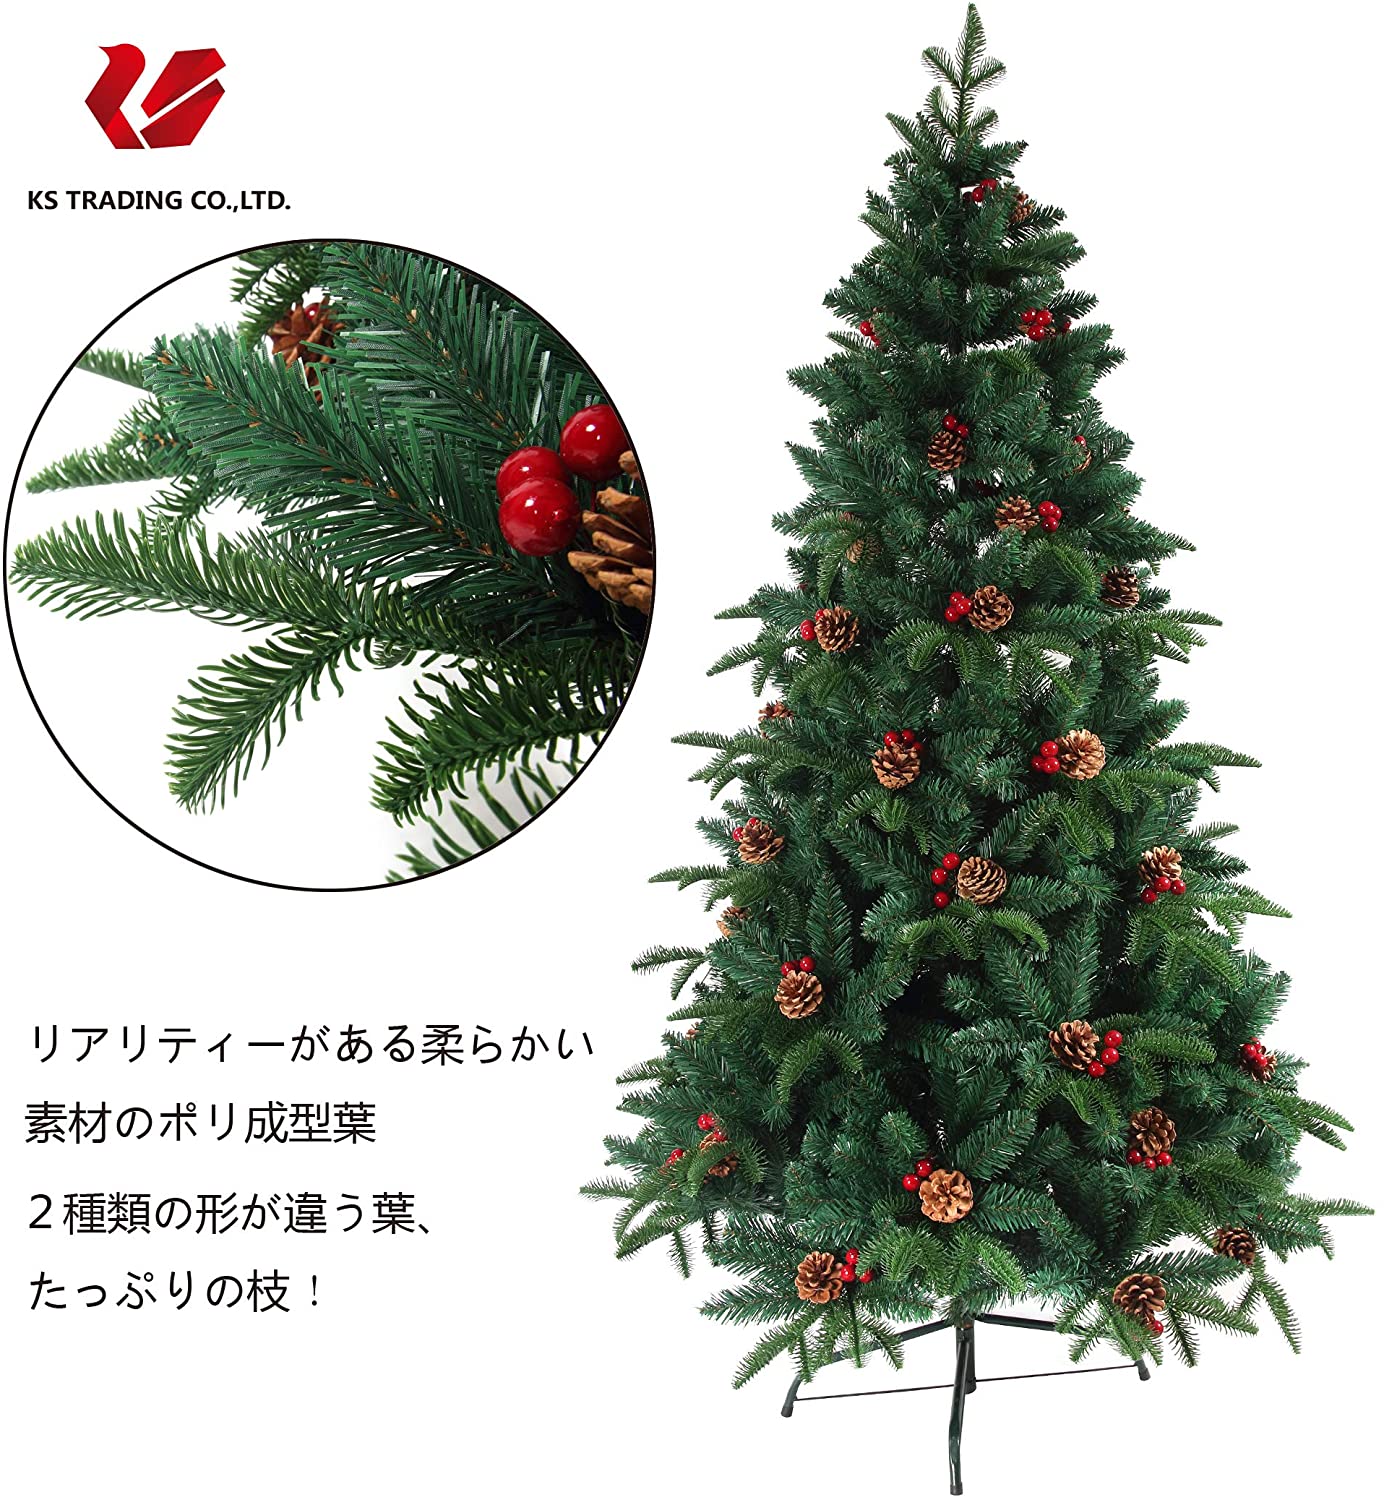 クリスマスツリー 枝大幅増量タイプ 松ぼっくり付き、赤い実付き、北欧 ...